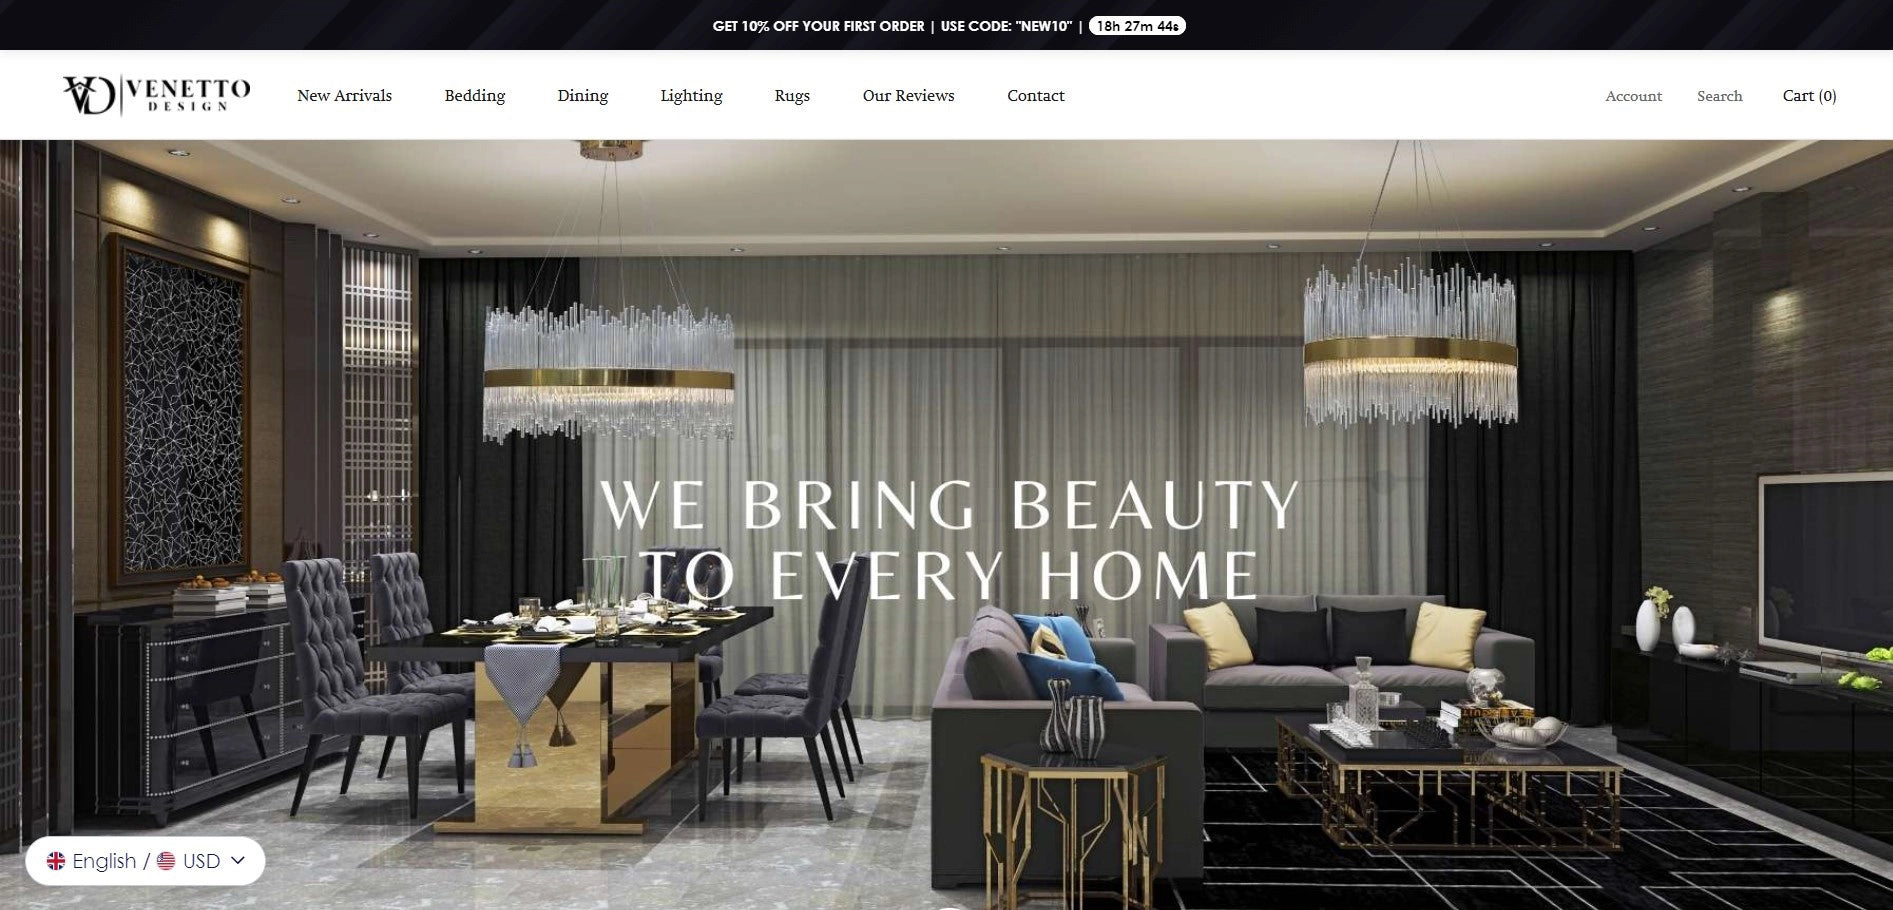 Venetto Design’s homepage